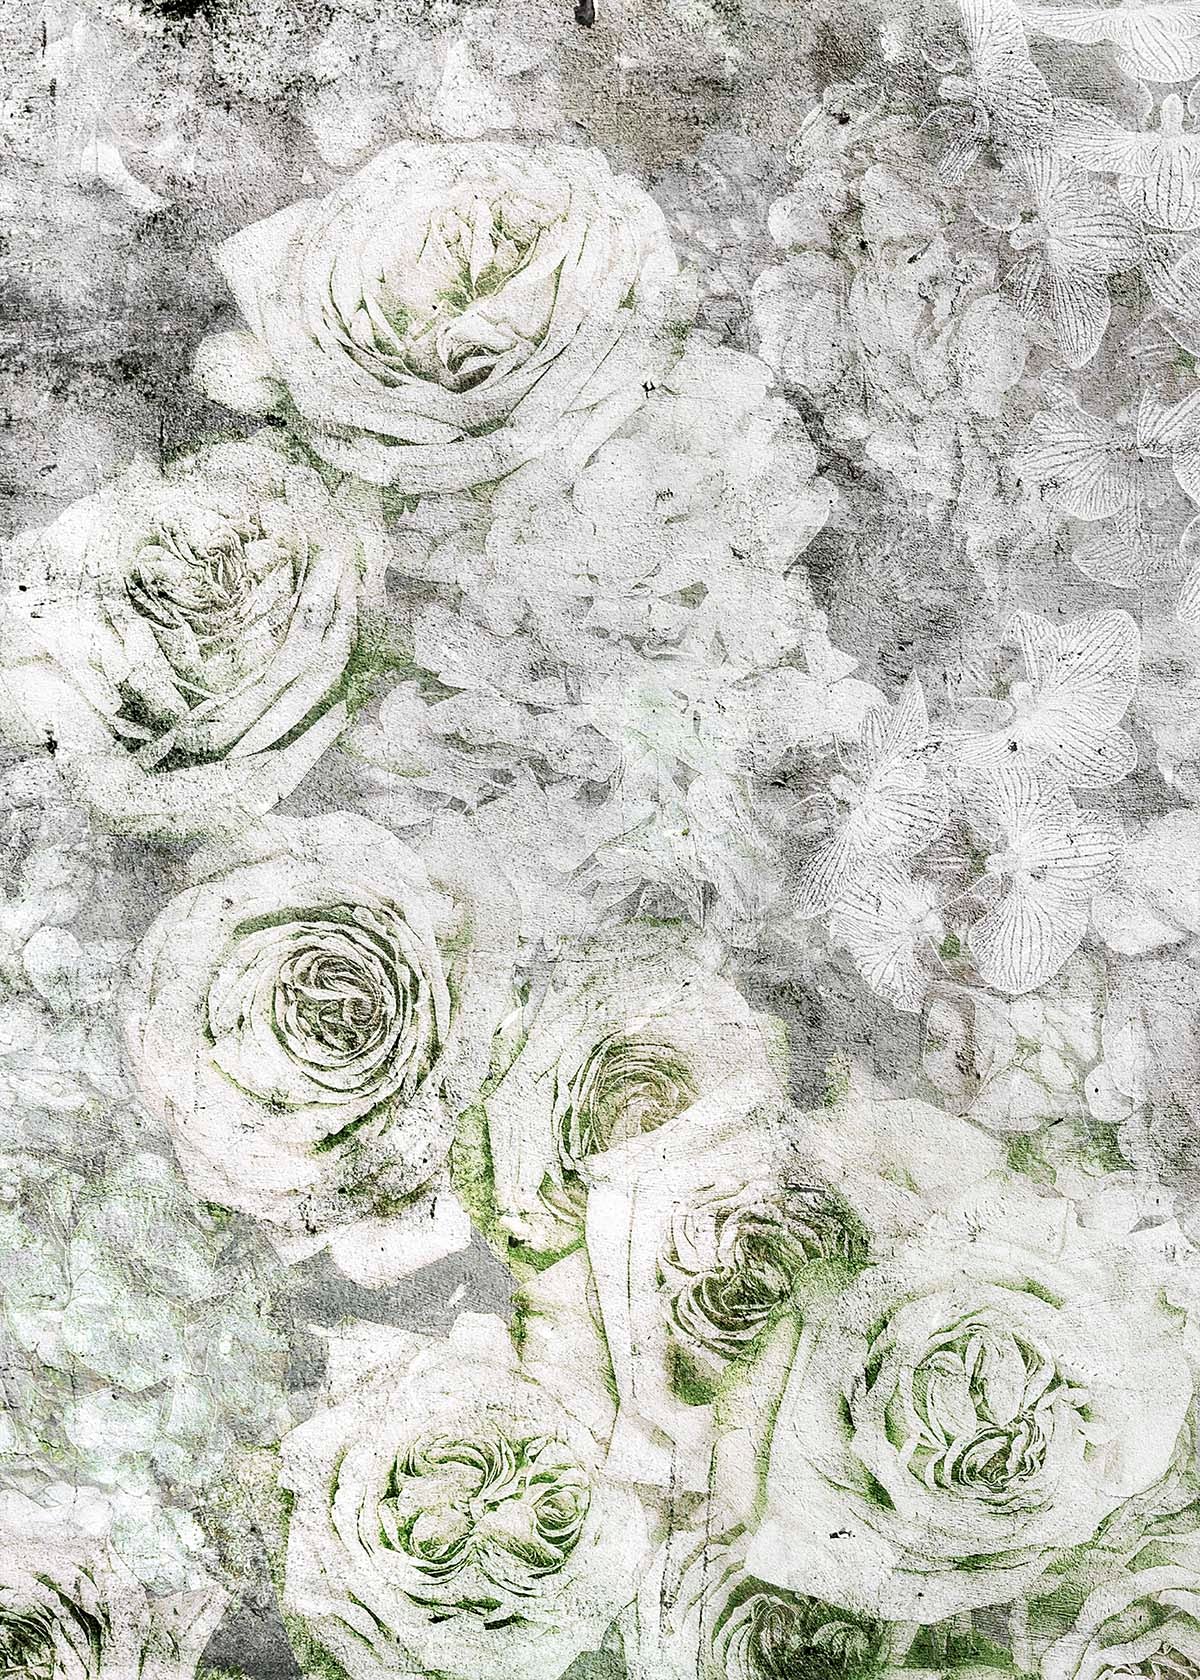 La rose blanche